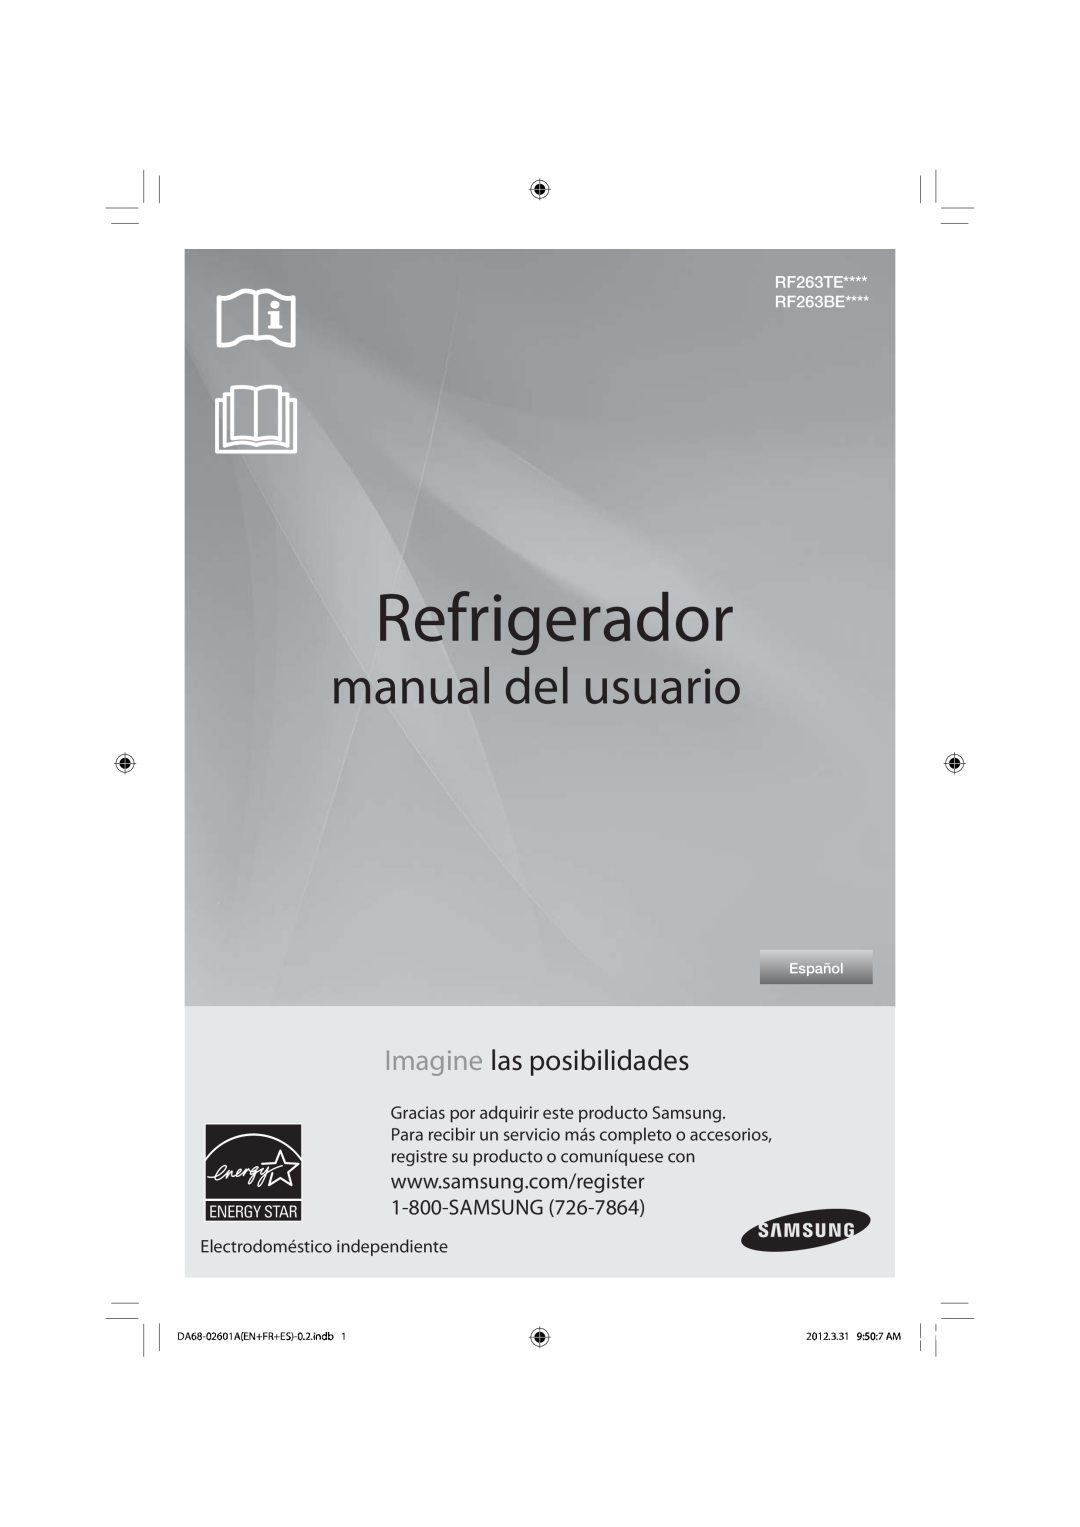 Samsung RF263BEAEWW Refrigerador, manual del usuario, Imagine las posibilidades, Electrodoméstico independiente, Español 